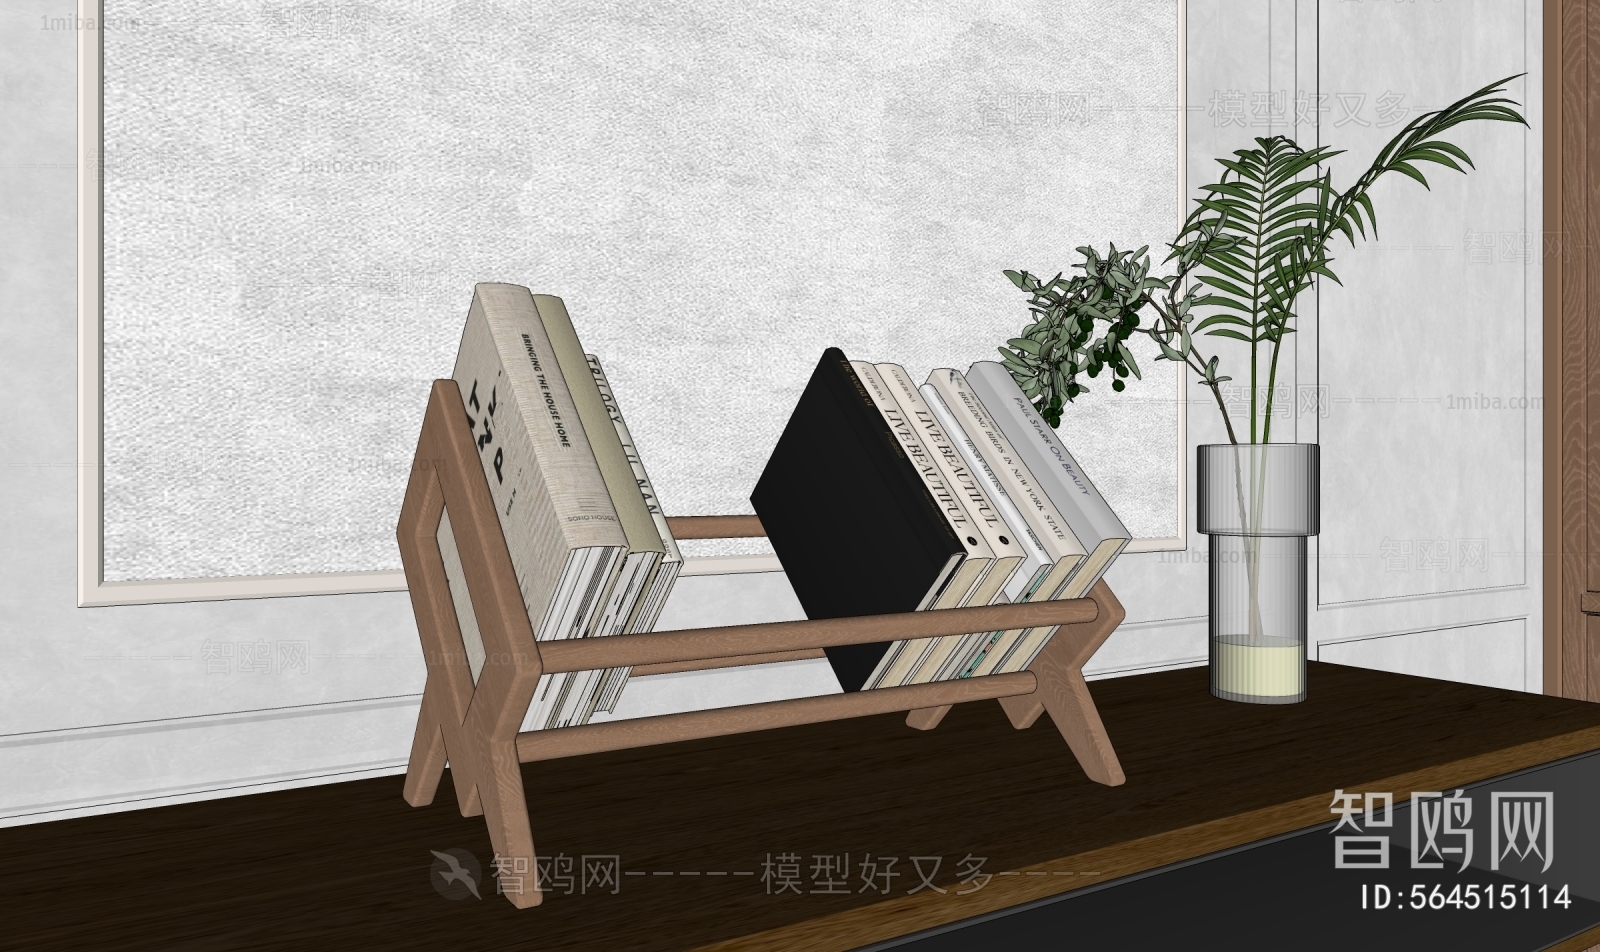 Wabi-sabi Style Bookshelf